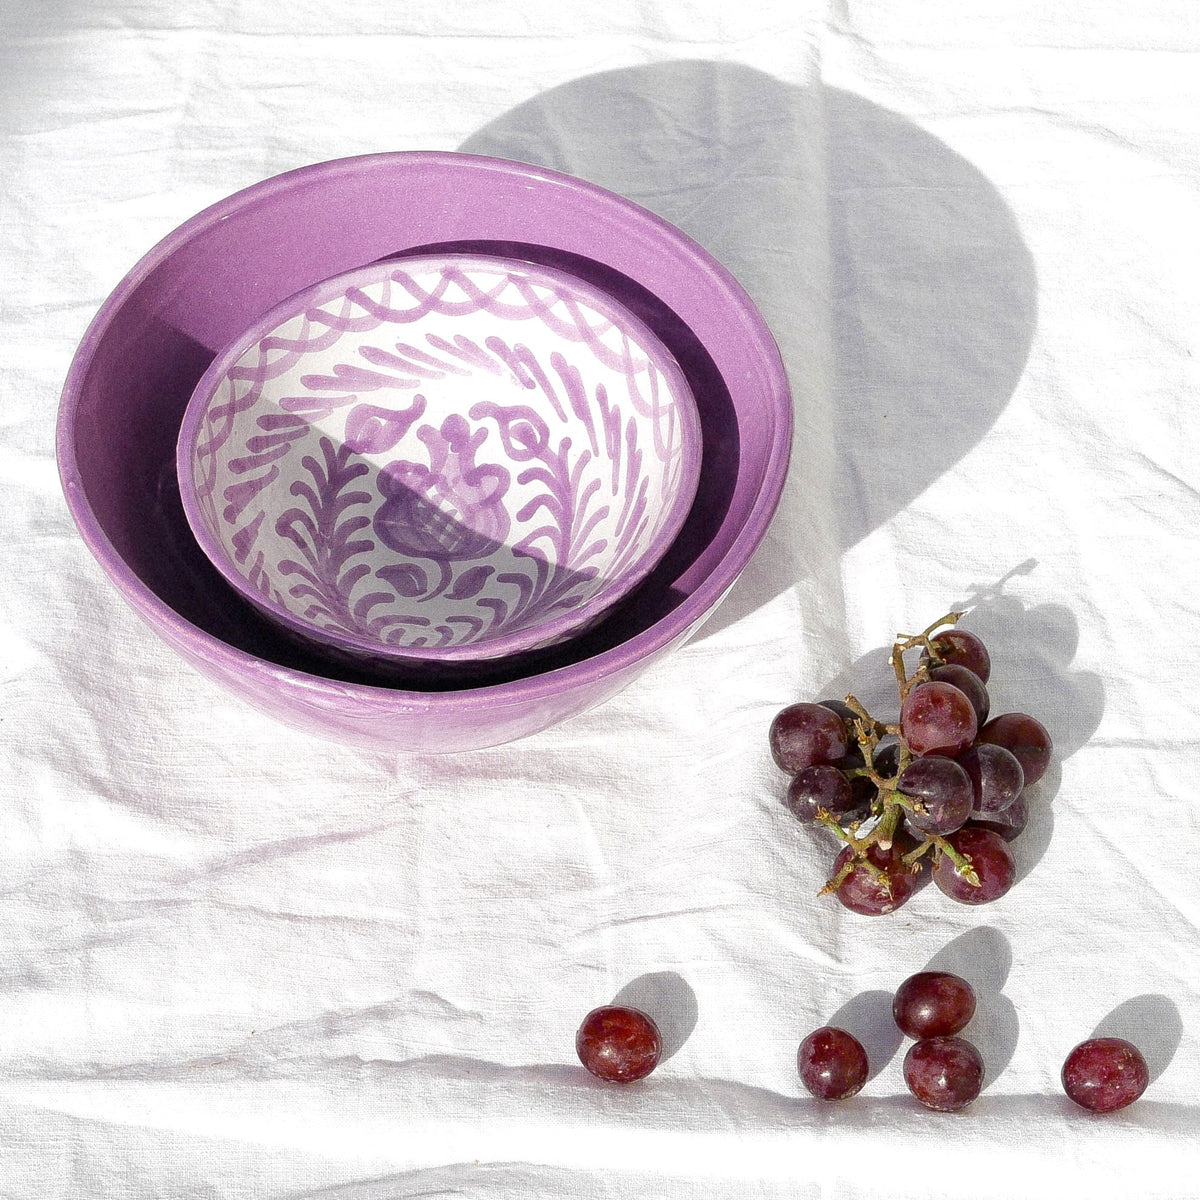 Casa Lila Medium Bowl with Lilac Glaze